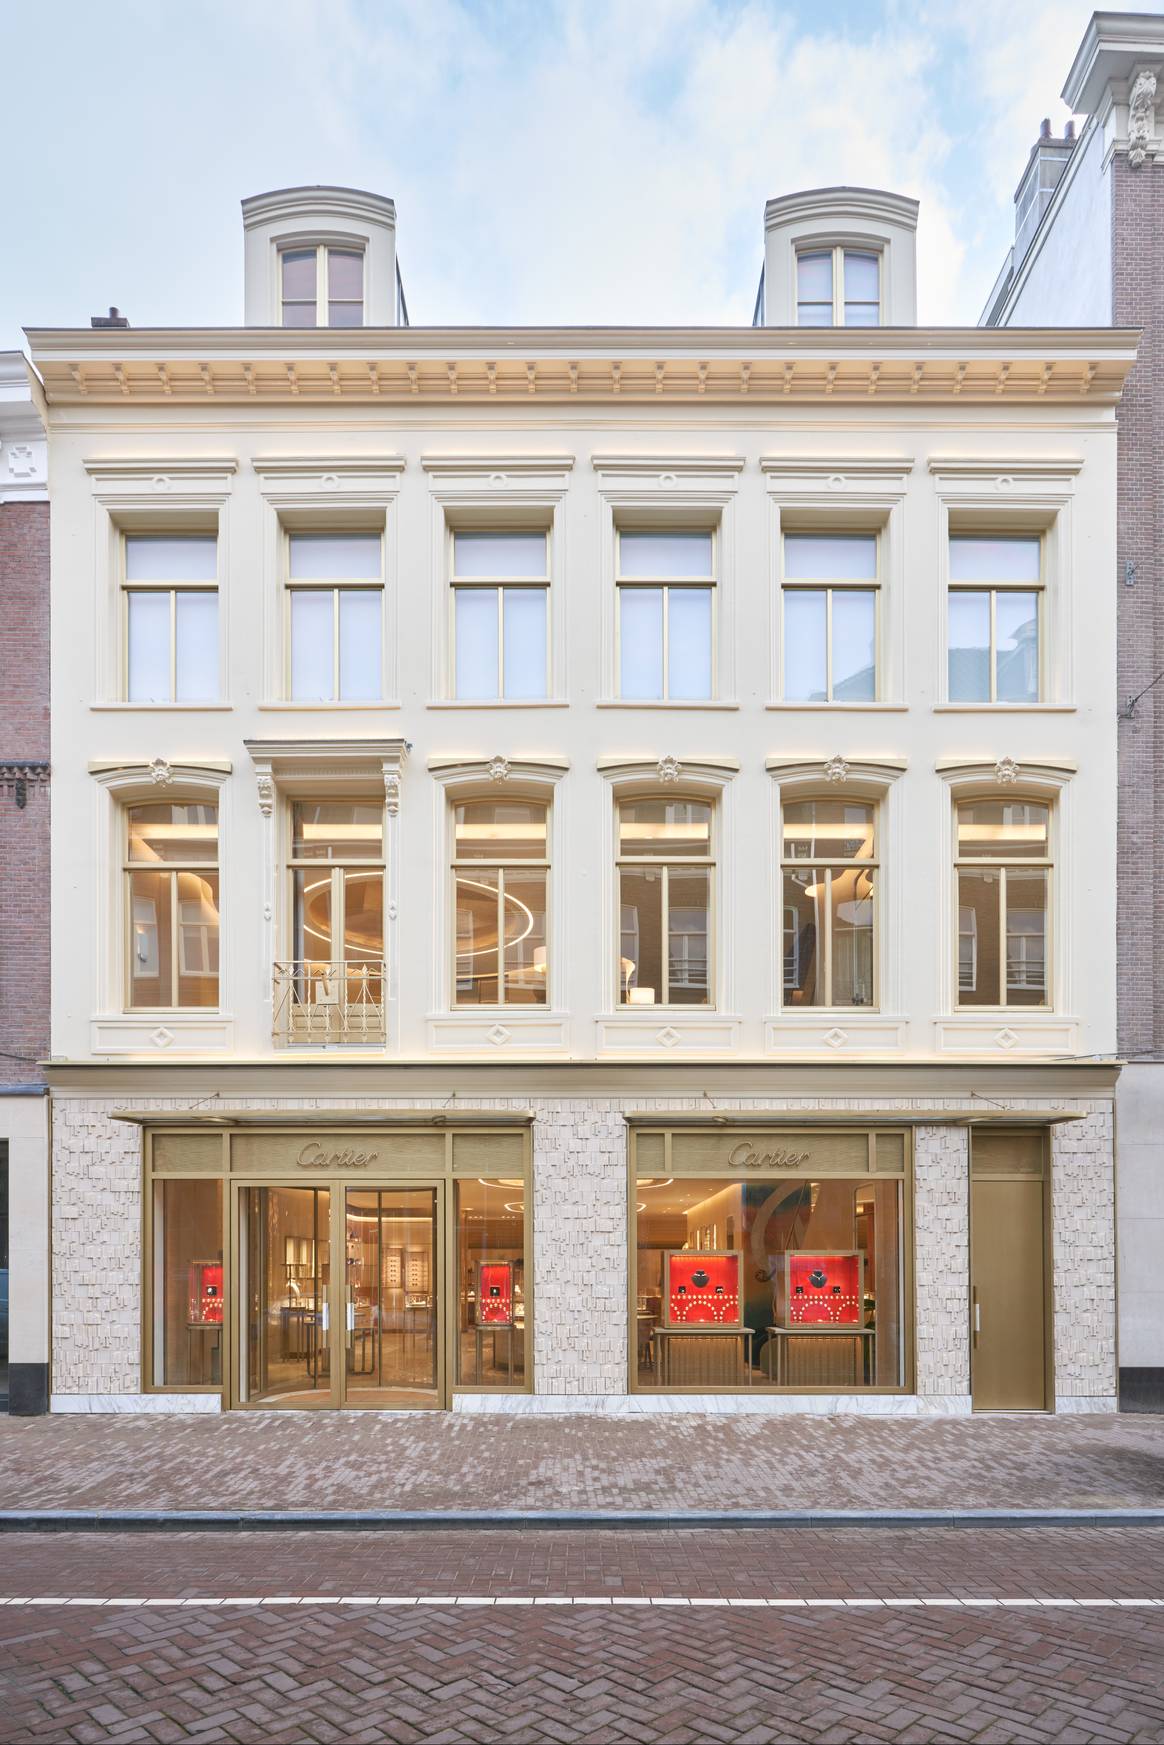 De nieuwe Cartier-winkel op de P.C. Hooftstraat in Amsterdam. Beeld via Cartier / Spice PR / Alexandre Tabaste